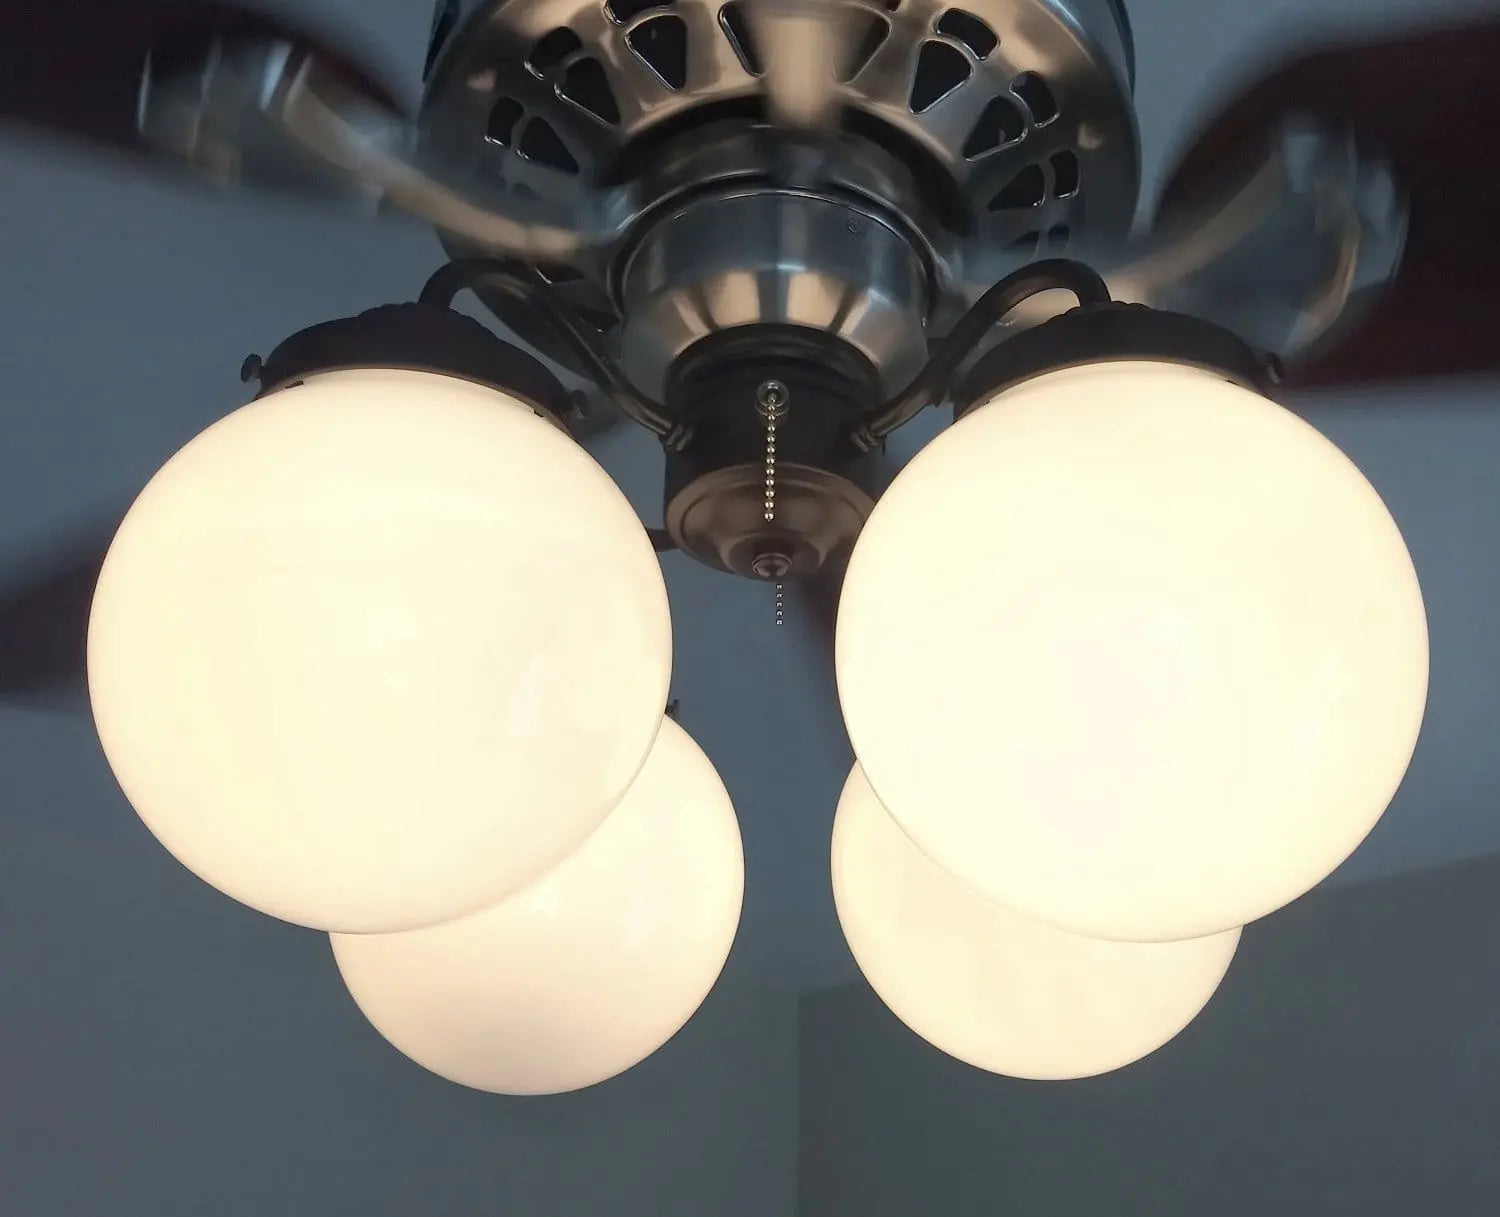 Ceiling Fan LIGHT KIT of Modern Milk Glass Globes - The Lamp Goods